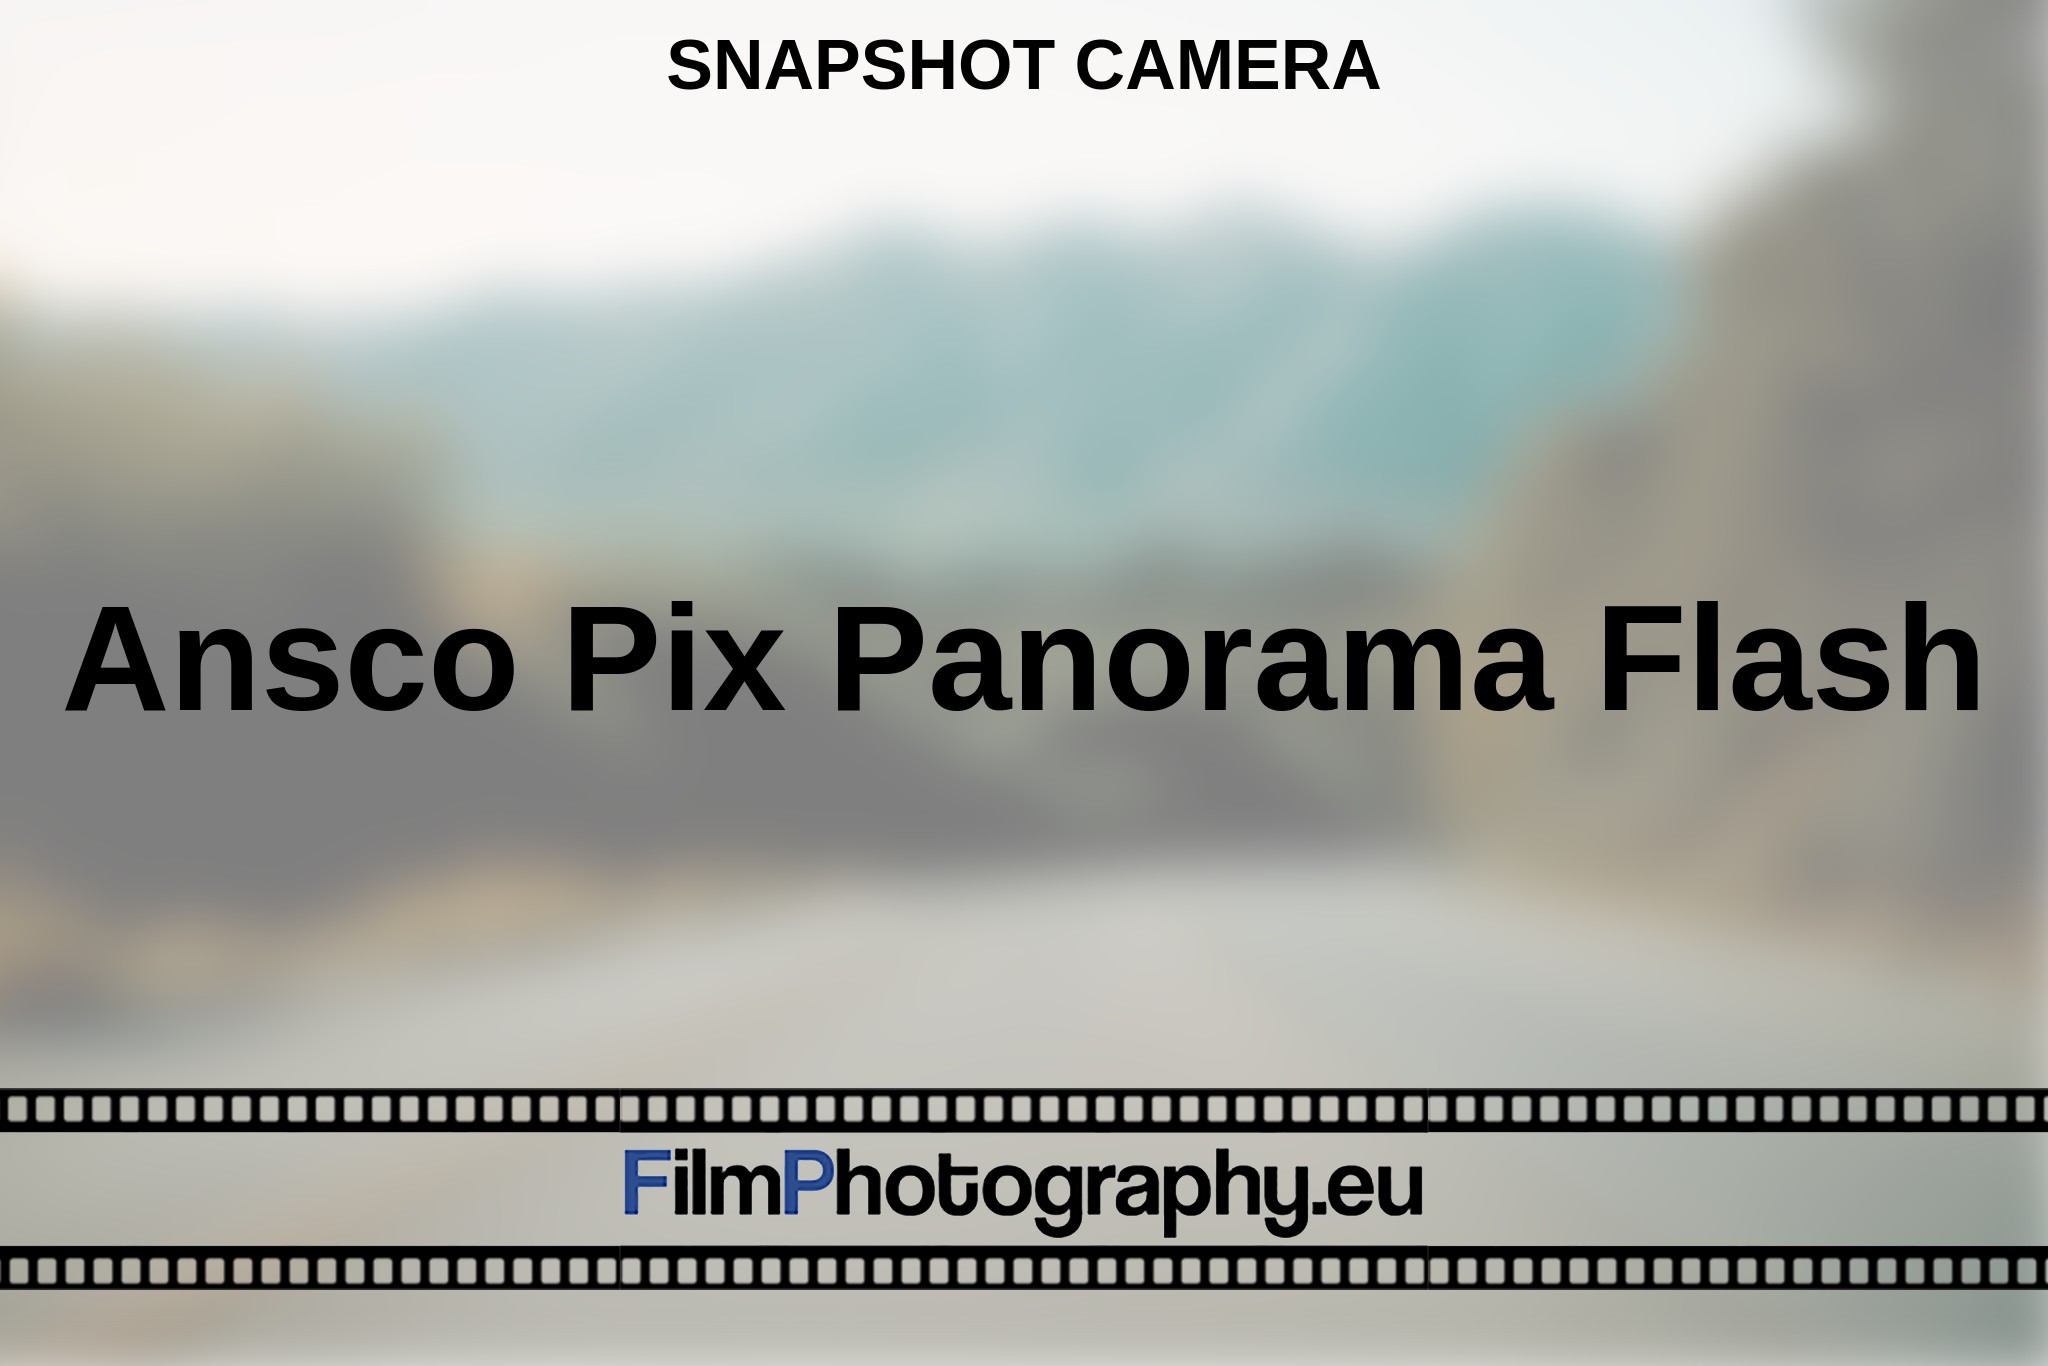 ansco-pix-panorama-flash-snapshot-camera-en-bnv.jpg